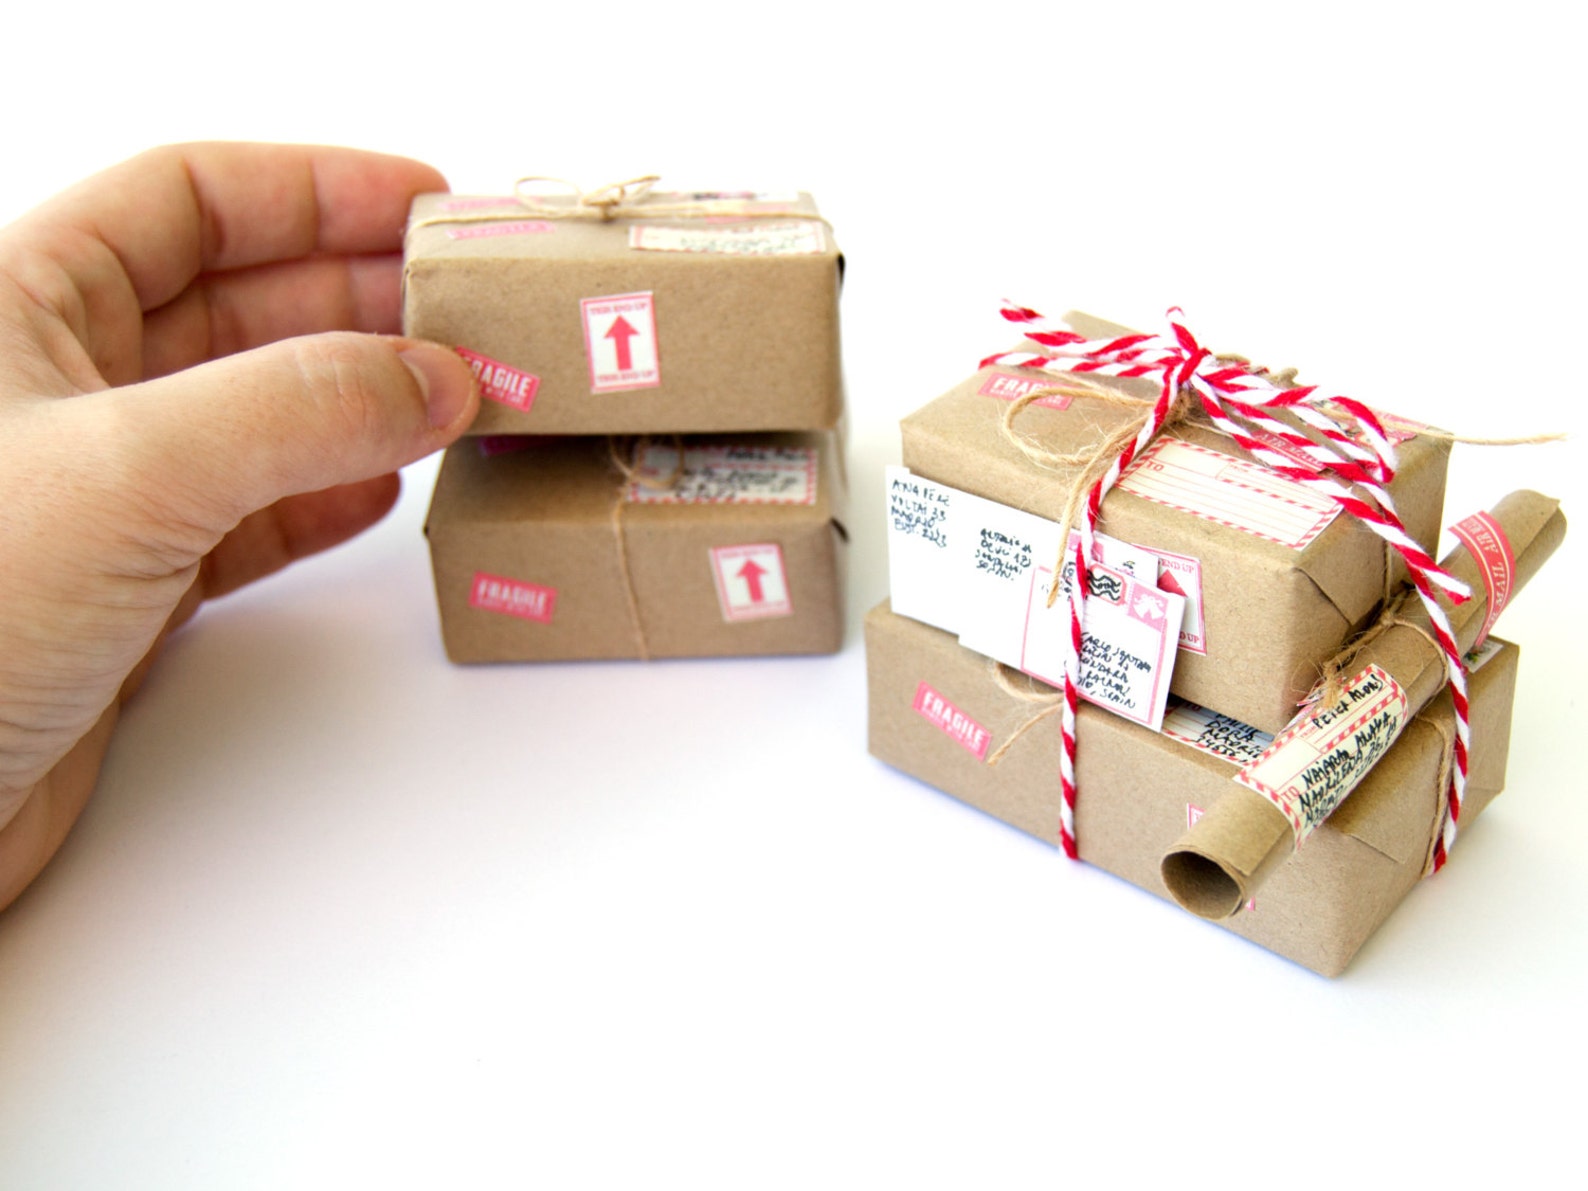 Package items. Индивидуальные подарки. Упаковка длдля миниатюр. Персонализация подарков. Маленькая коробка.